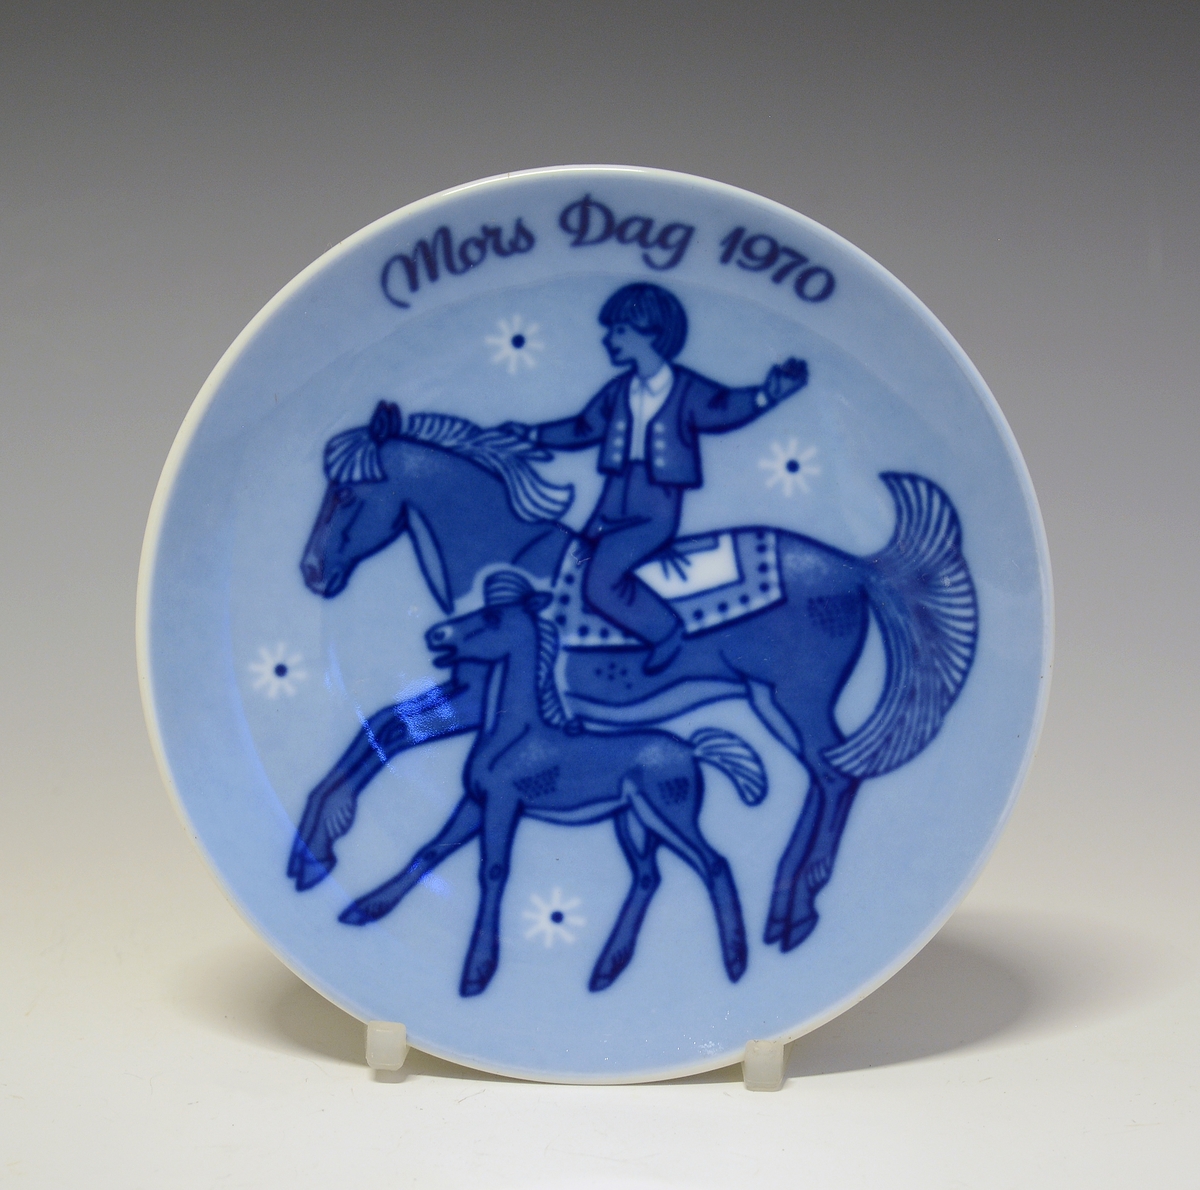 Platte i porselen med blå trykkdekor. Morsdagsplatte med avbildet gutt på hesteryggen, hesten med føll ved fot.